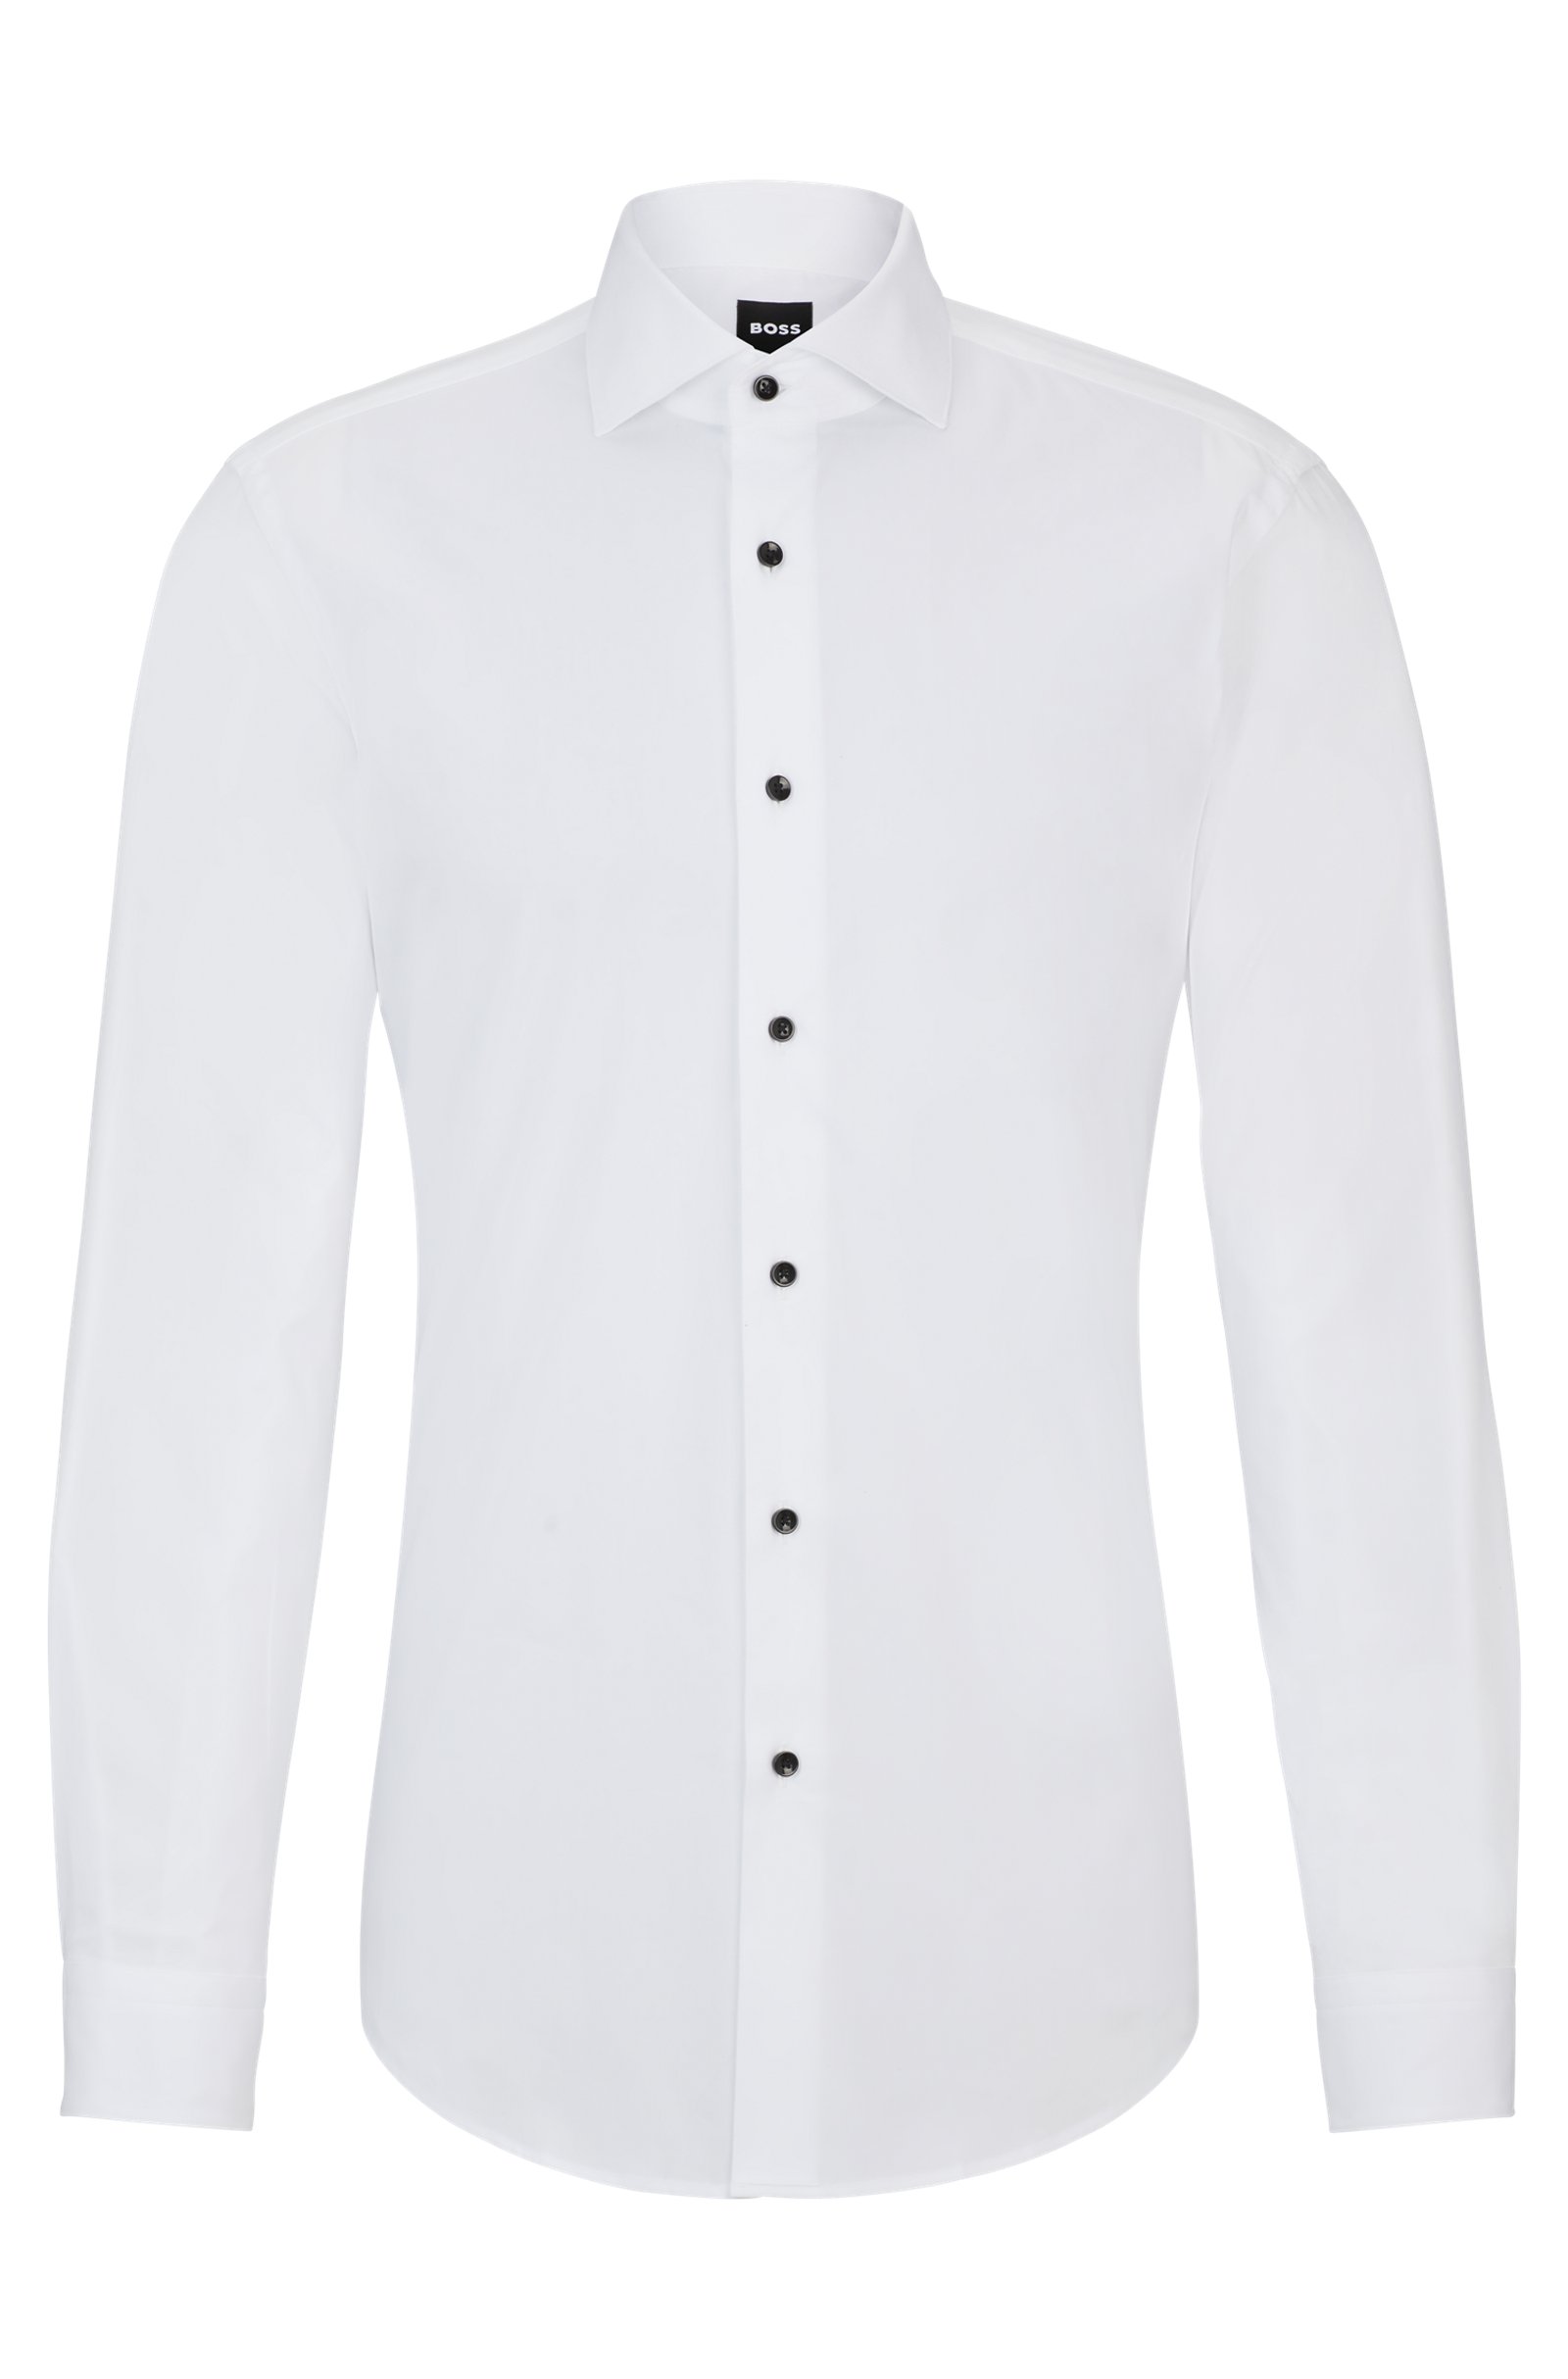 Рубашка Boss Slim-fit Dress In Easy-iron Stretch Cotton, белый рубашка из эластичного поплина zara белый